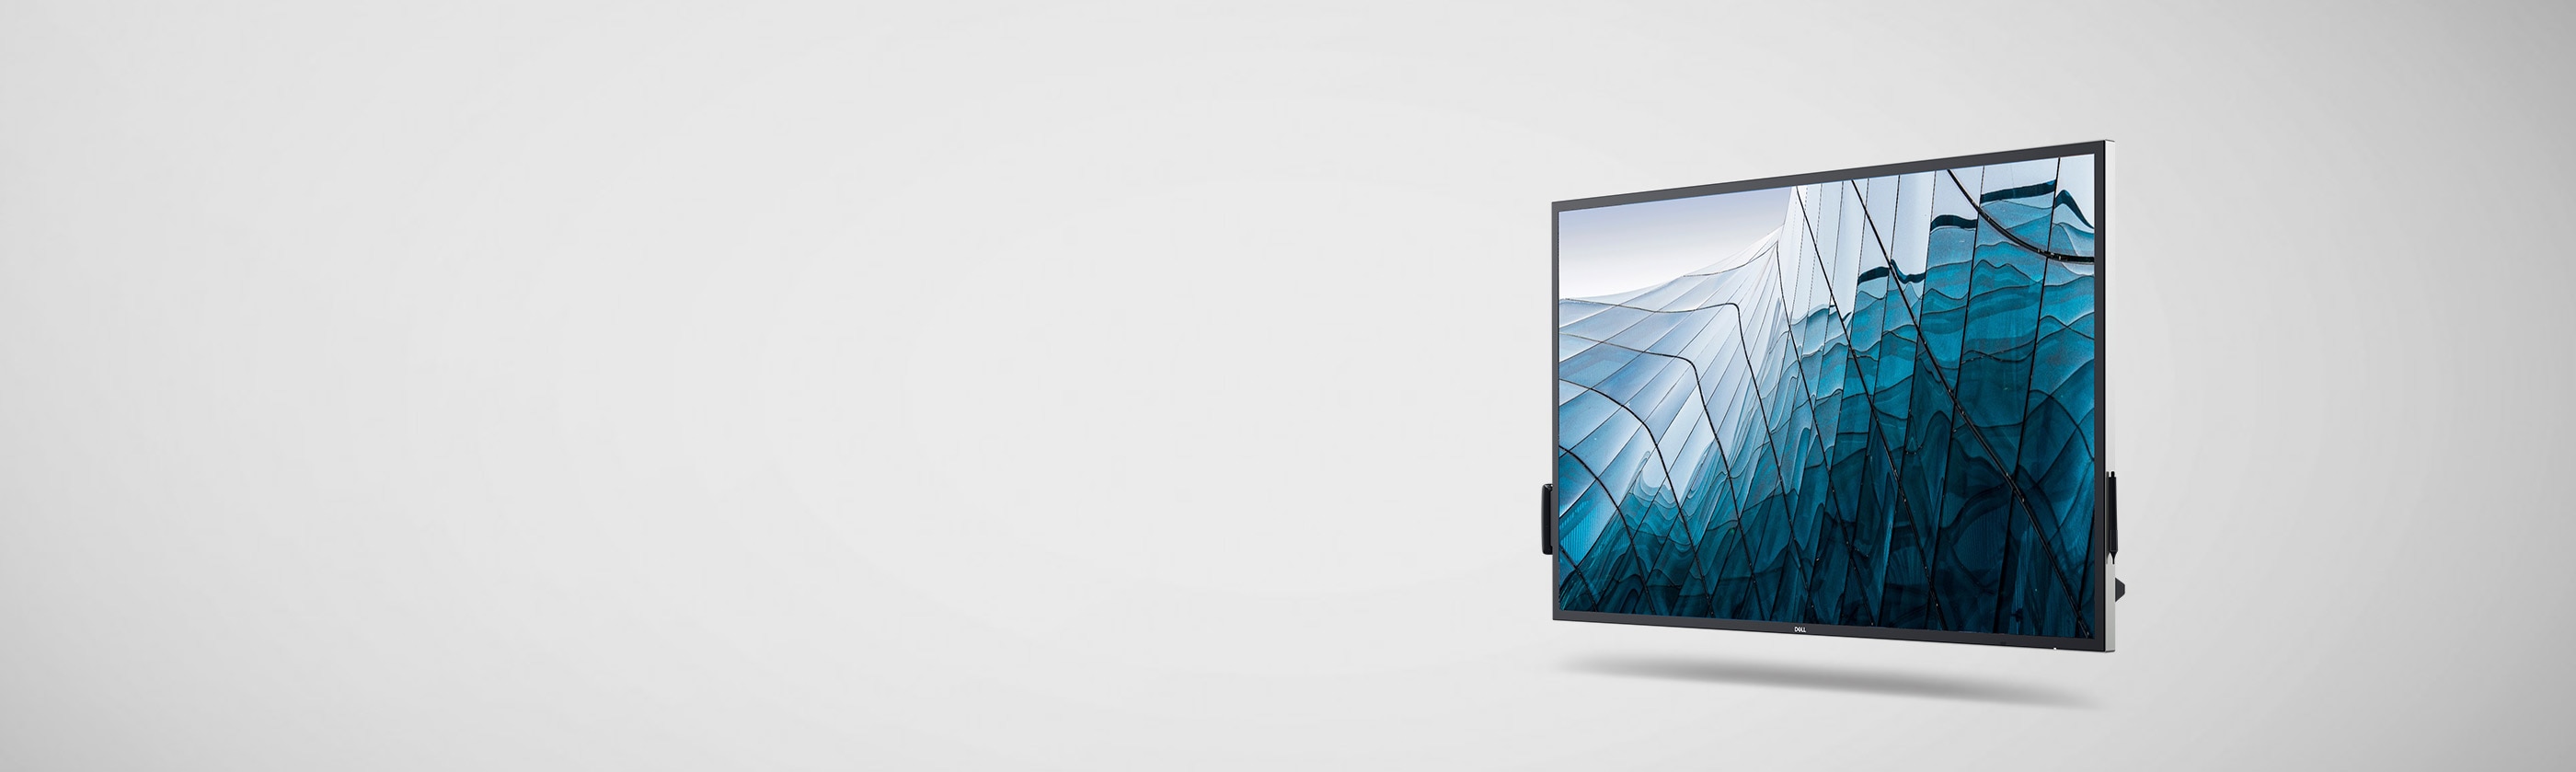 Touch Screen Monitors | Dell USA